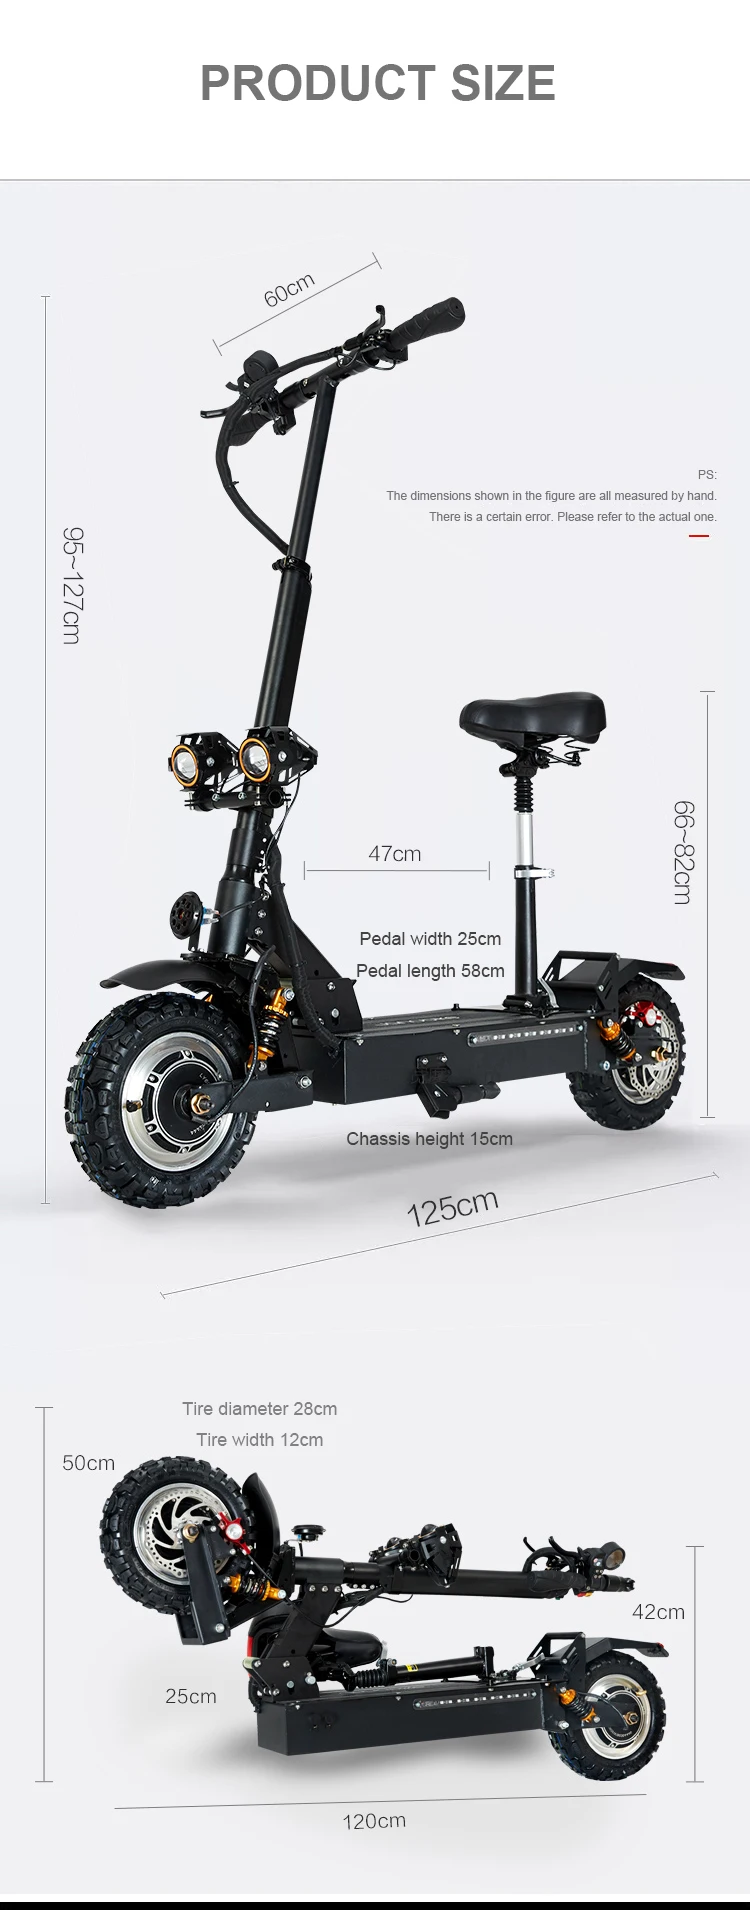 Elctric скутер 60V3200w передний задний двойной привод внедорожный электрический скутер ebike максимум 85 км/ч складной электровелосипед